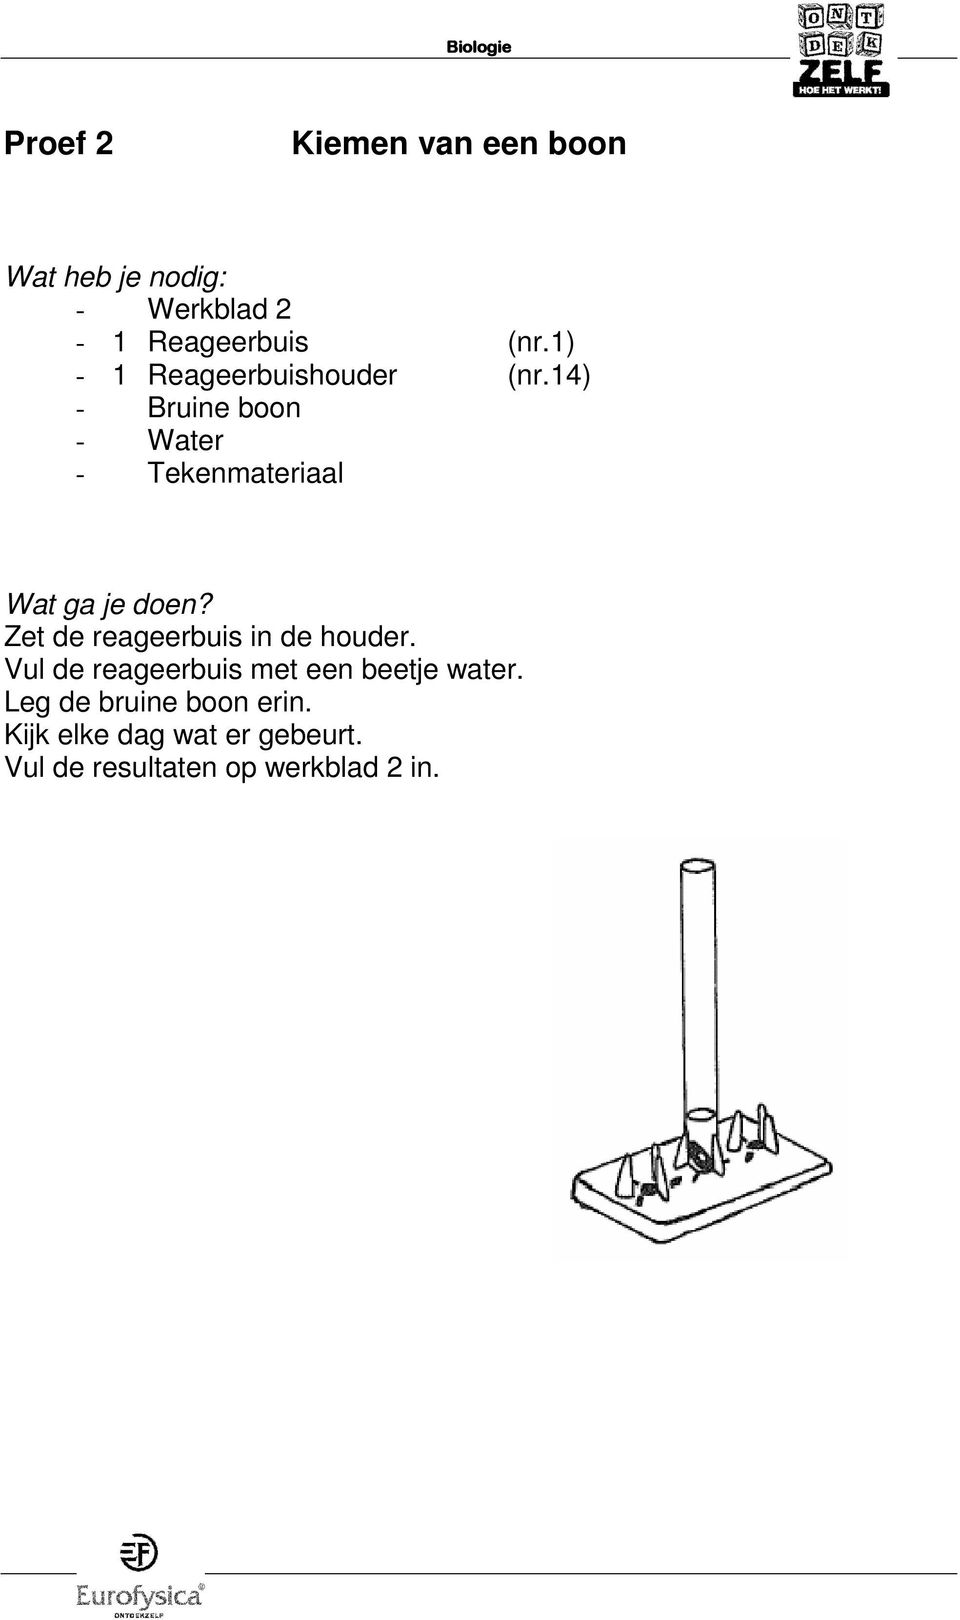 14) - Bruine boon - Water - Tekenmateriaal Zet de reageerbuis in de